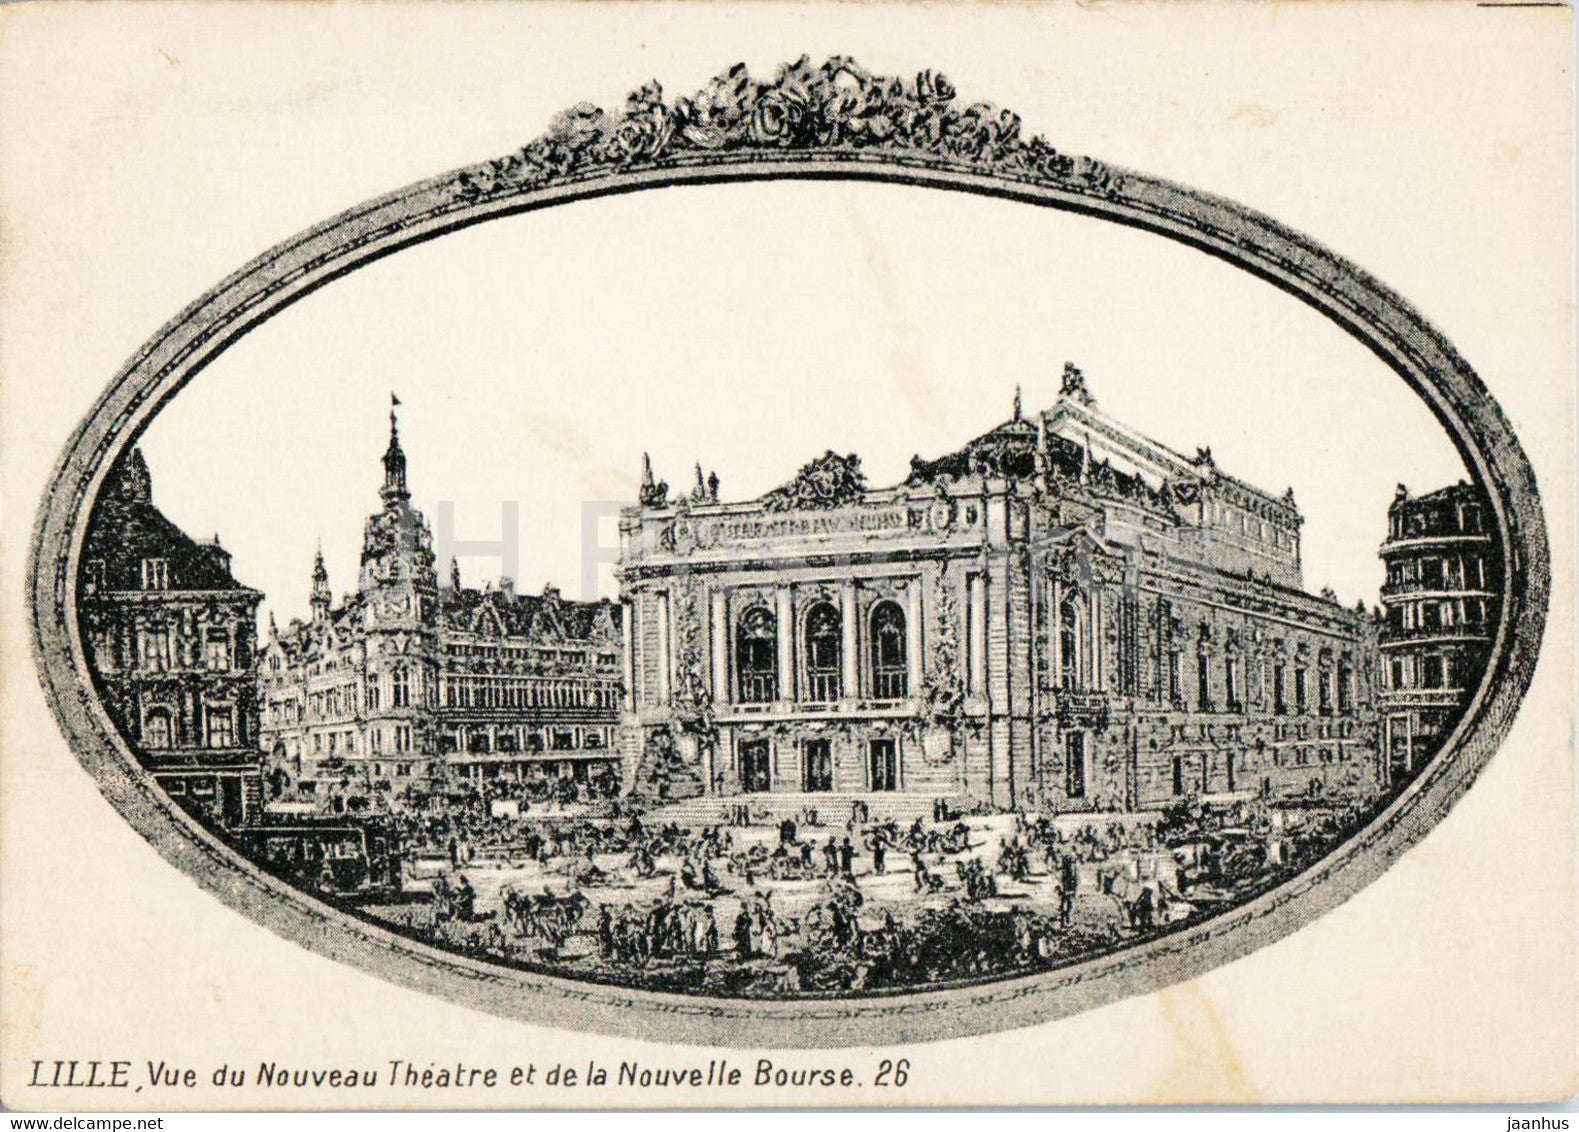 Lille - Vue du Nouveau Theatre et de la Nouvelle Bourse 26 - illustration - old postcard - France - unused - JH Postcards